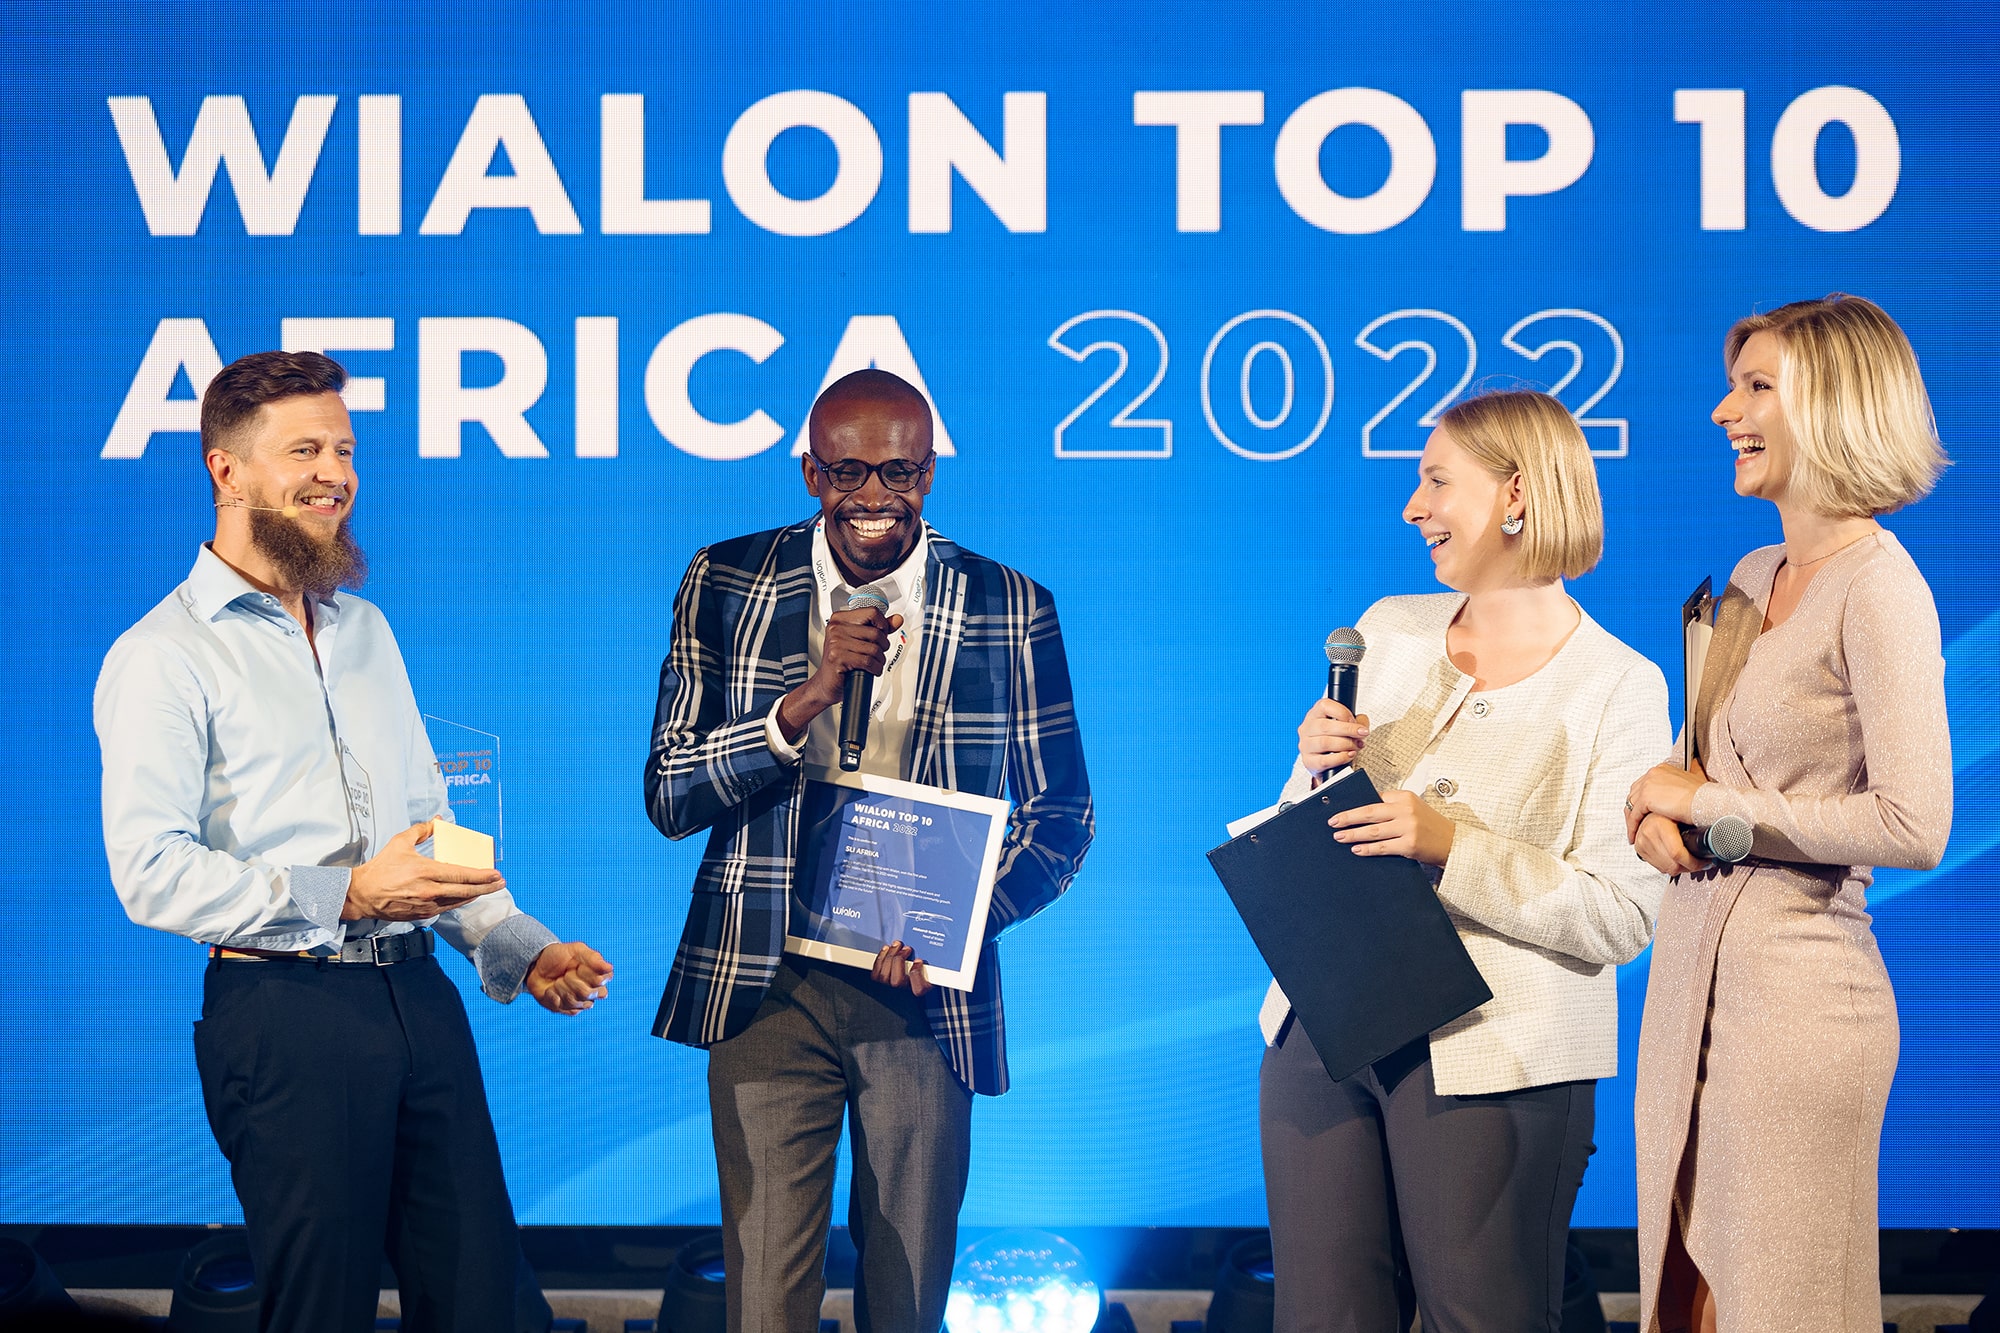 Wialon Top 10 Africa 2022